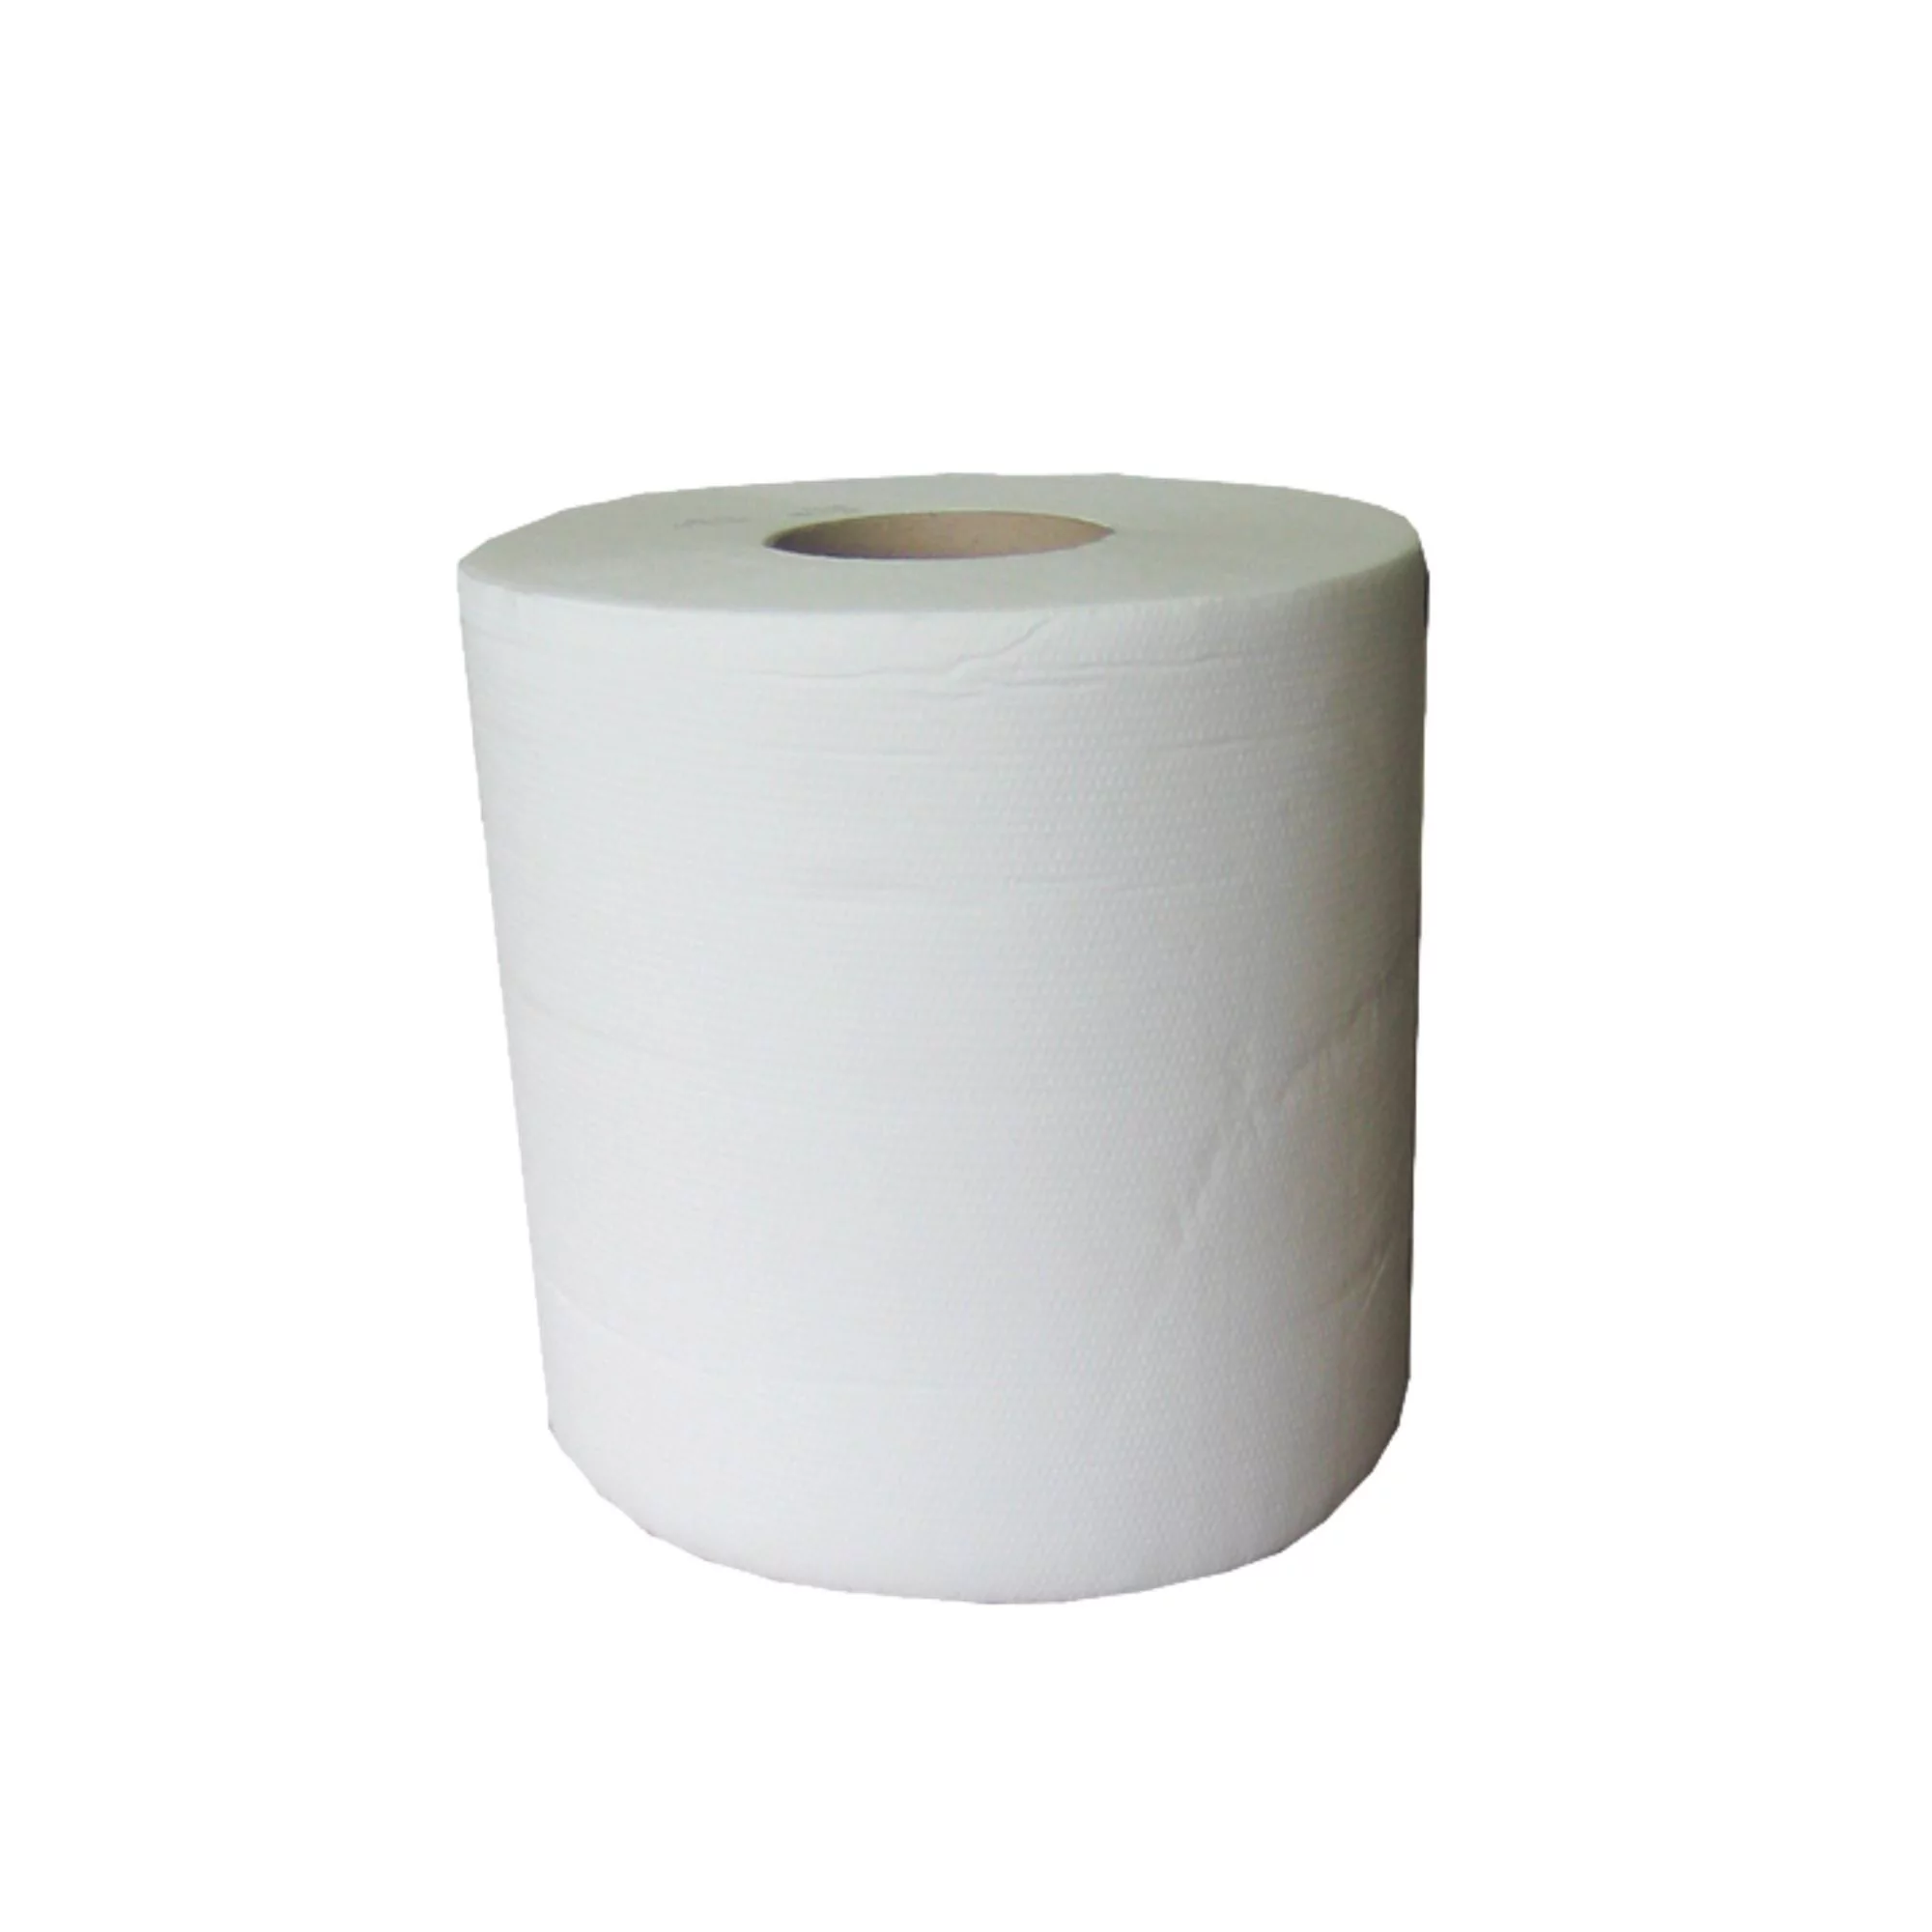 6 bobines de papier maxi à dévidage central - 450 formats - Plis gaufrés fabriqué par Global Hygiène vendu par My Podologie